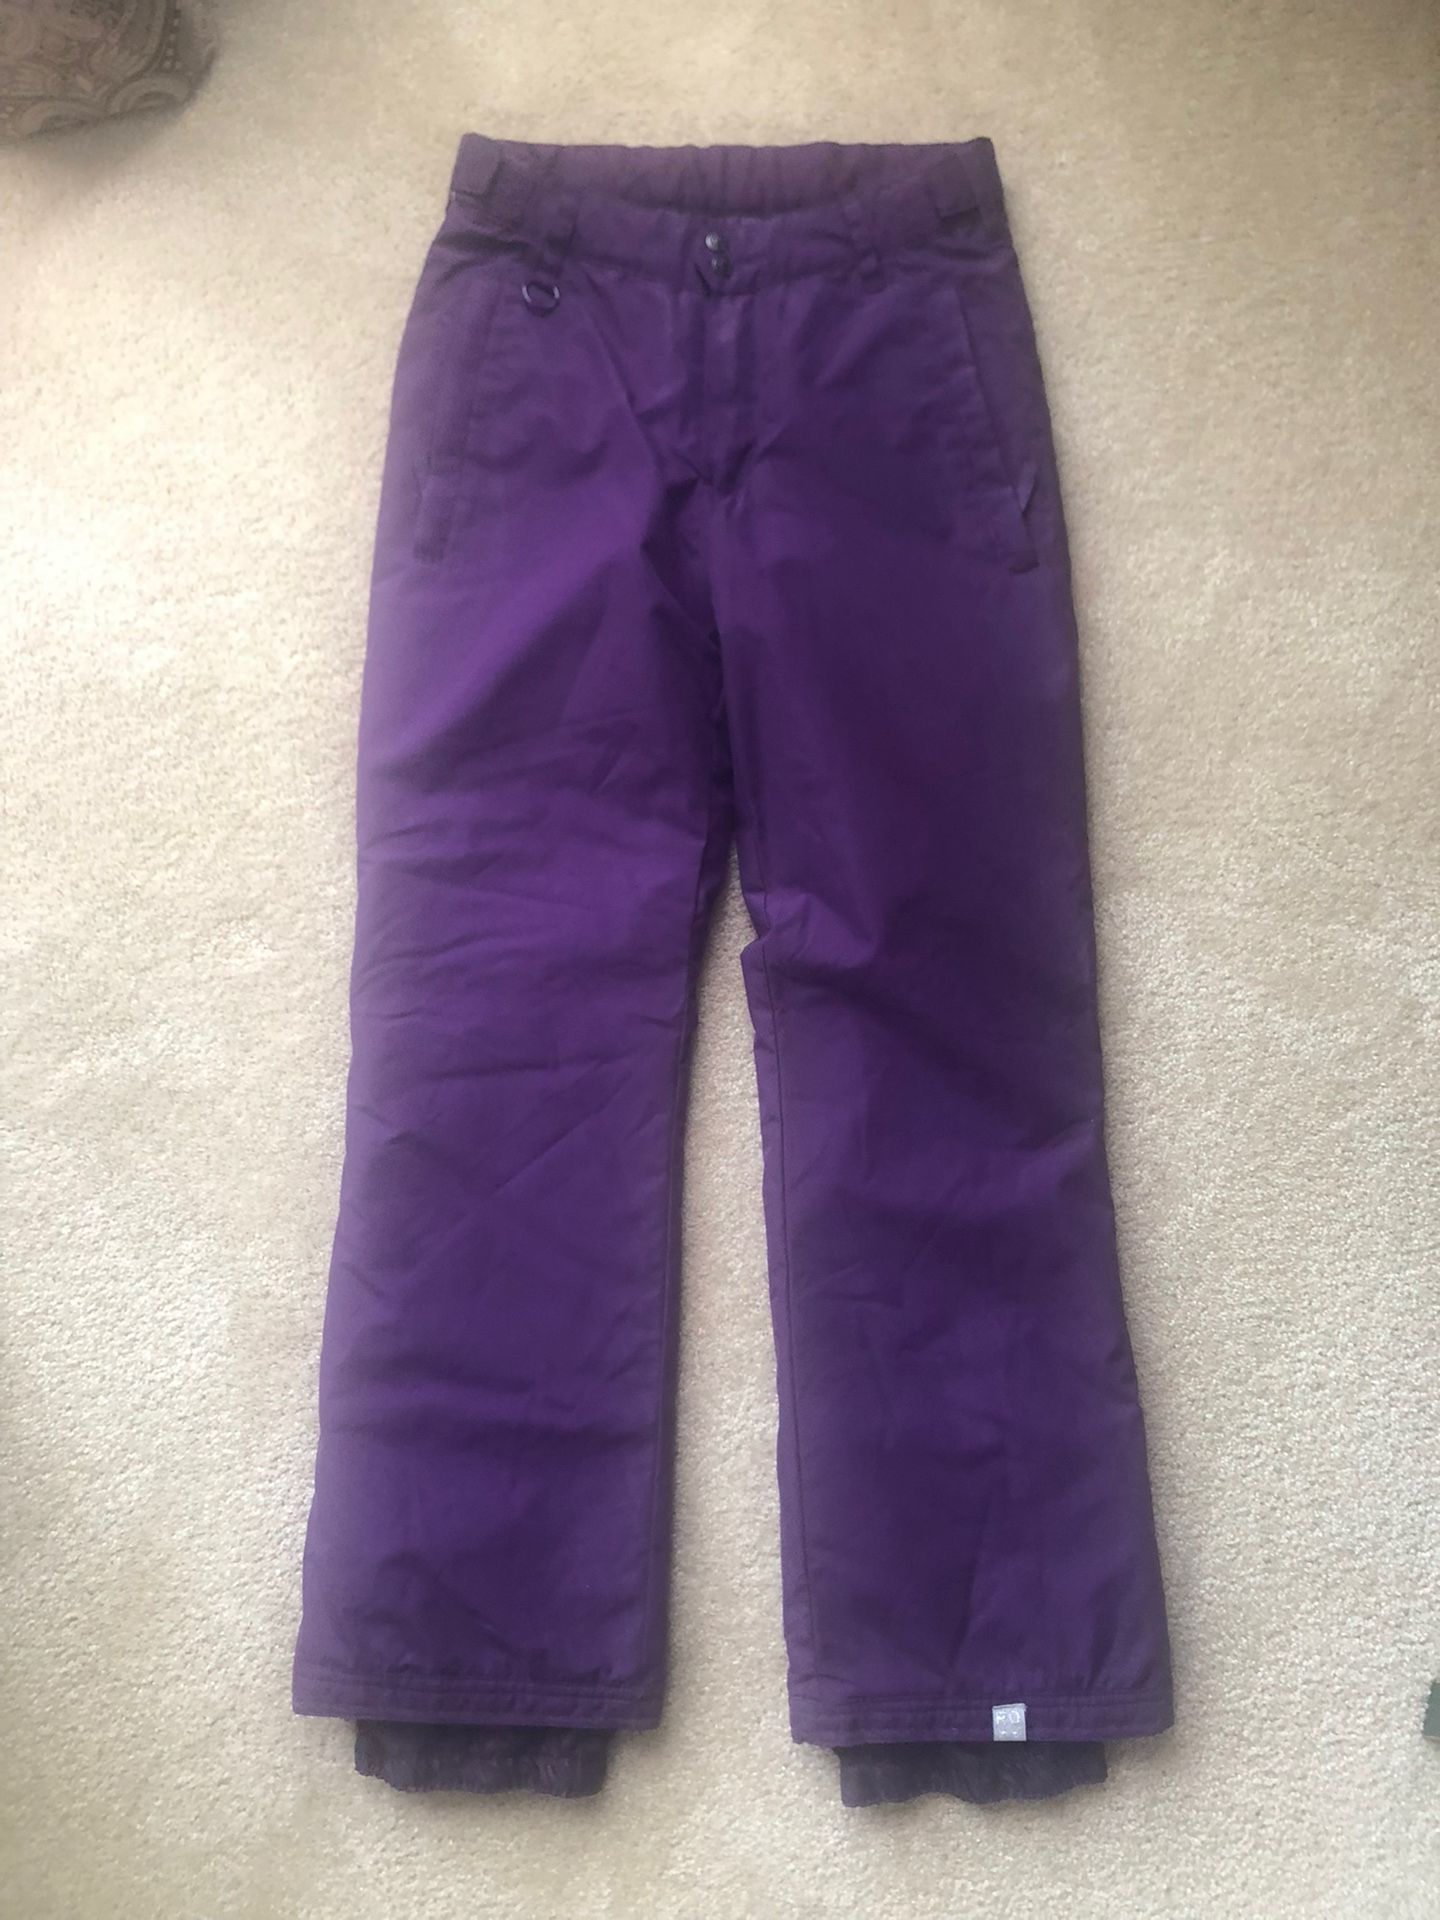 Roxy, Ski Pants, Purple, Size XL Girls